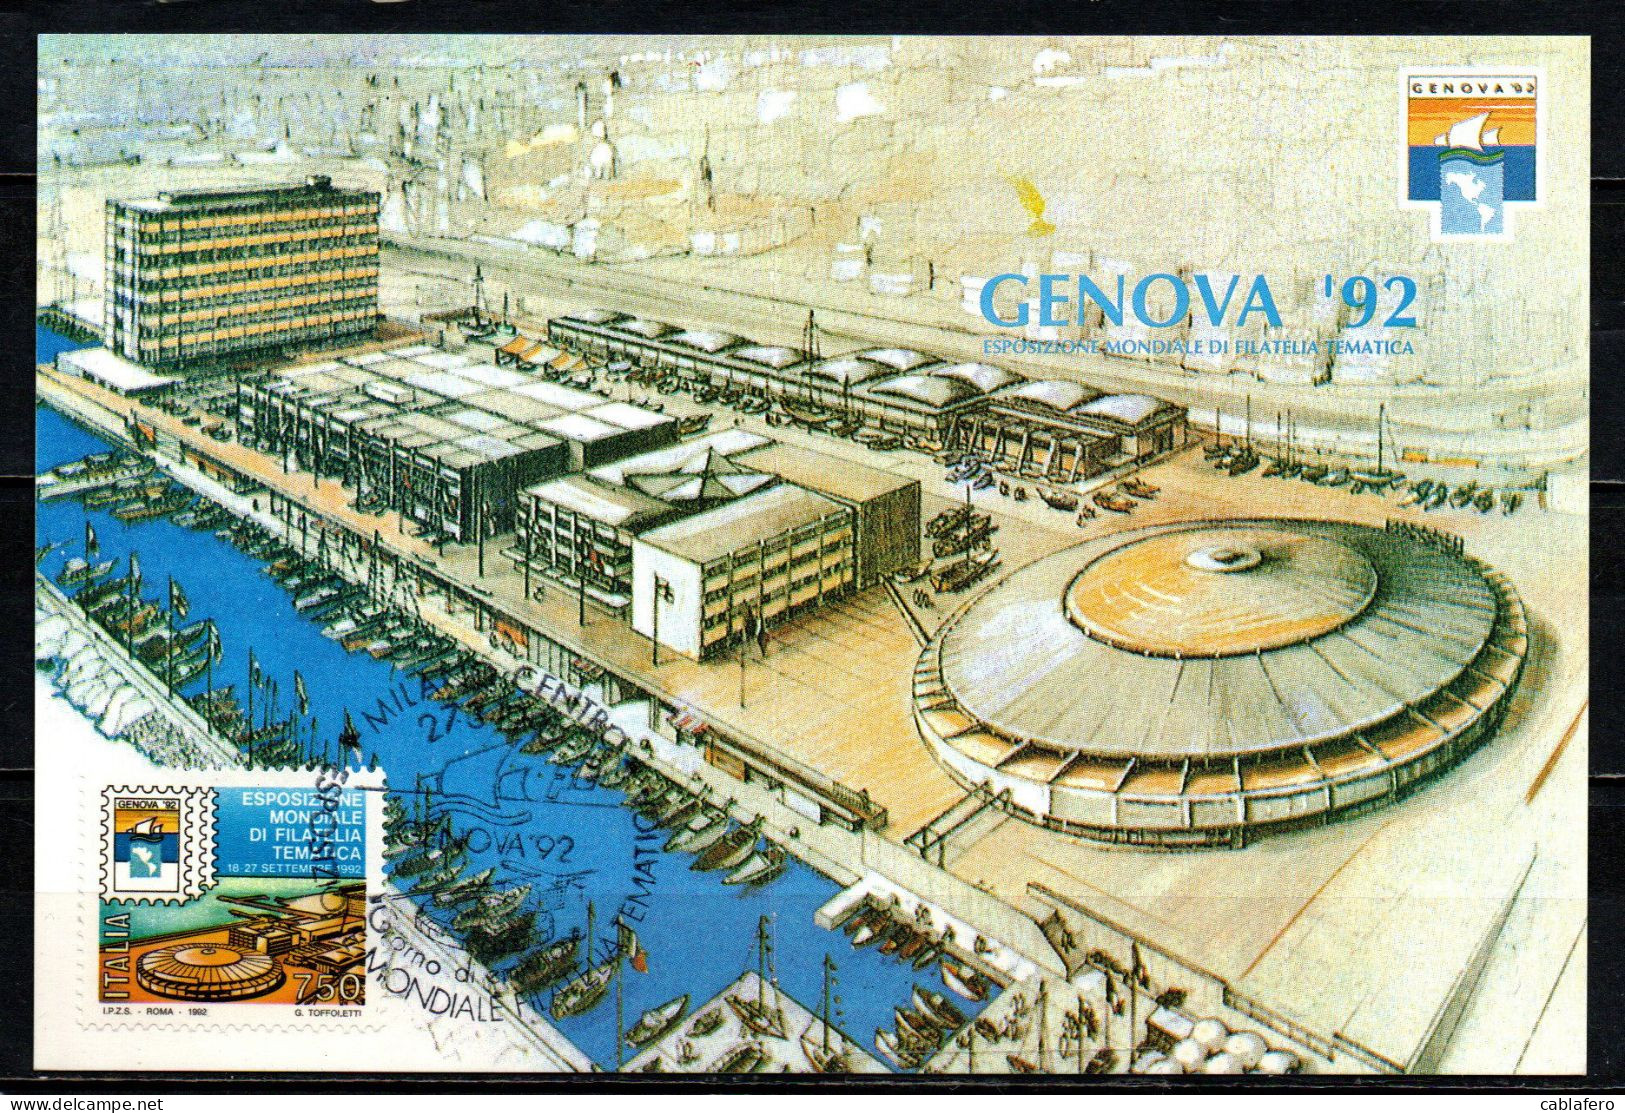 ITALIA - 1992 - ESPOSIZIONE MONDAILE DI FILATYELIA TEMATICA "GENOVA '92" - Maximumkaarten